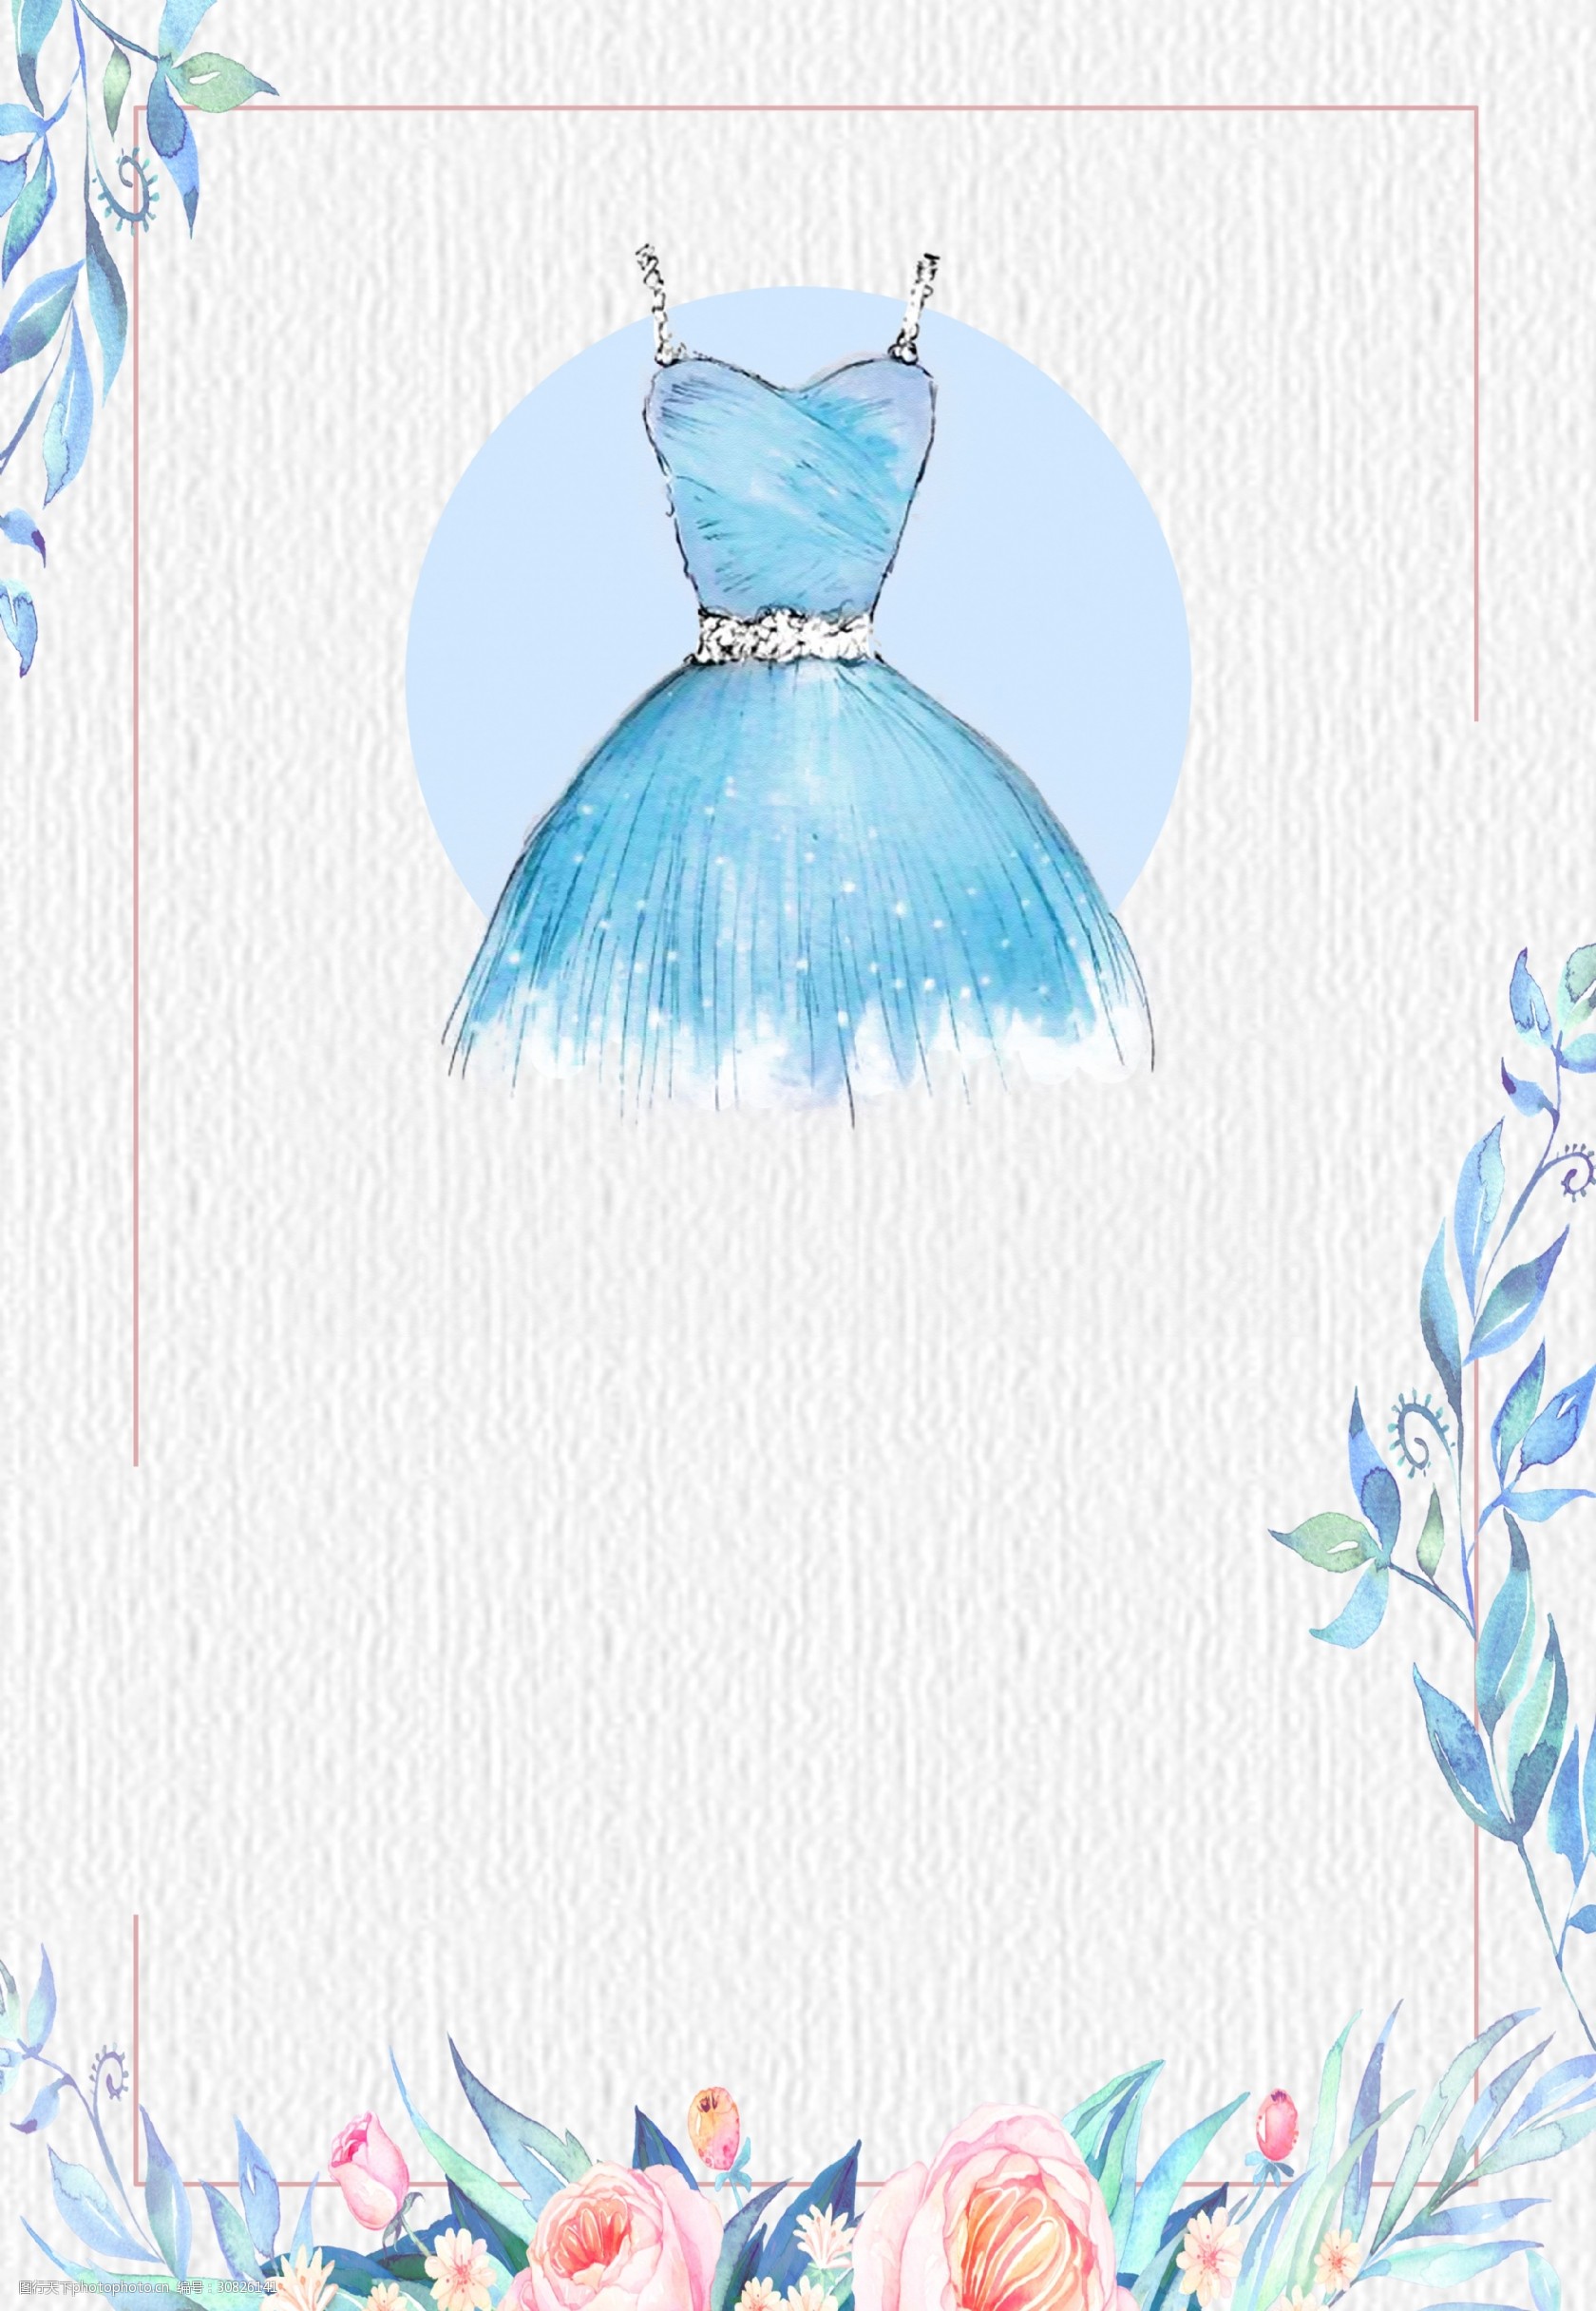 广告背景 关键词:彩绘蓝色吊带连衣裙双十一背景素材 时尚 服装背景